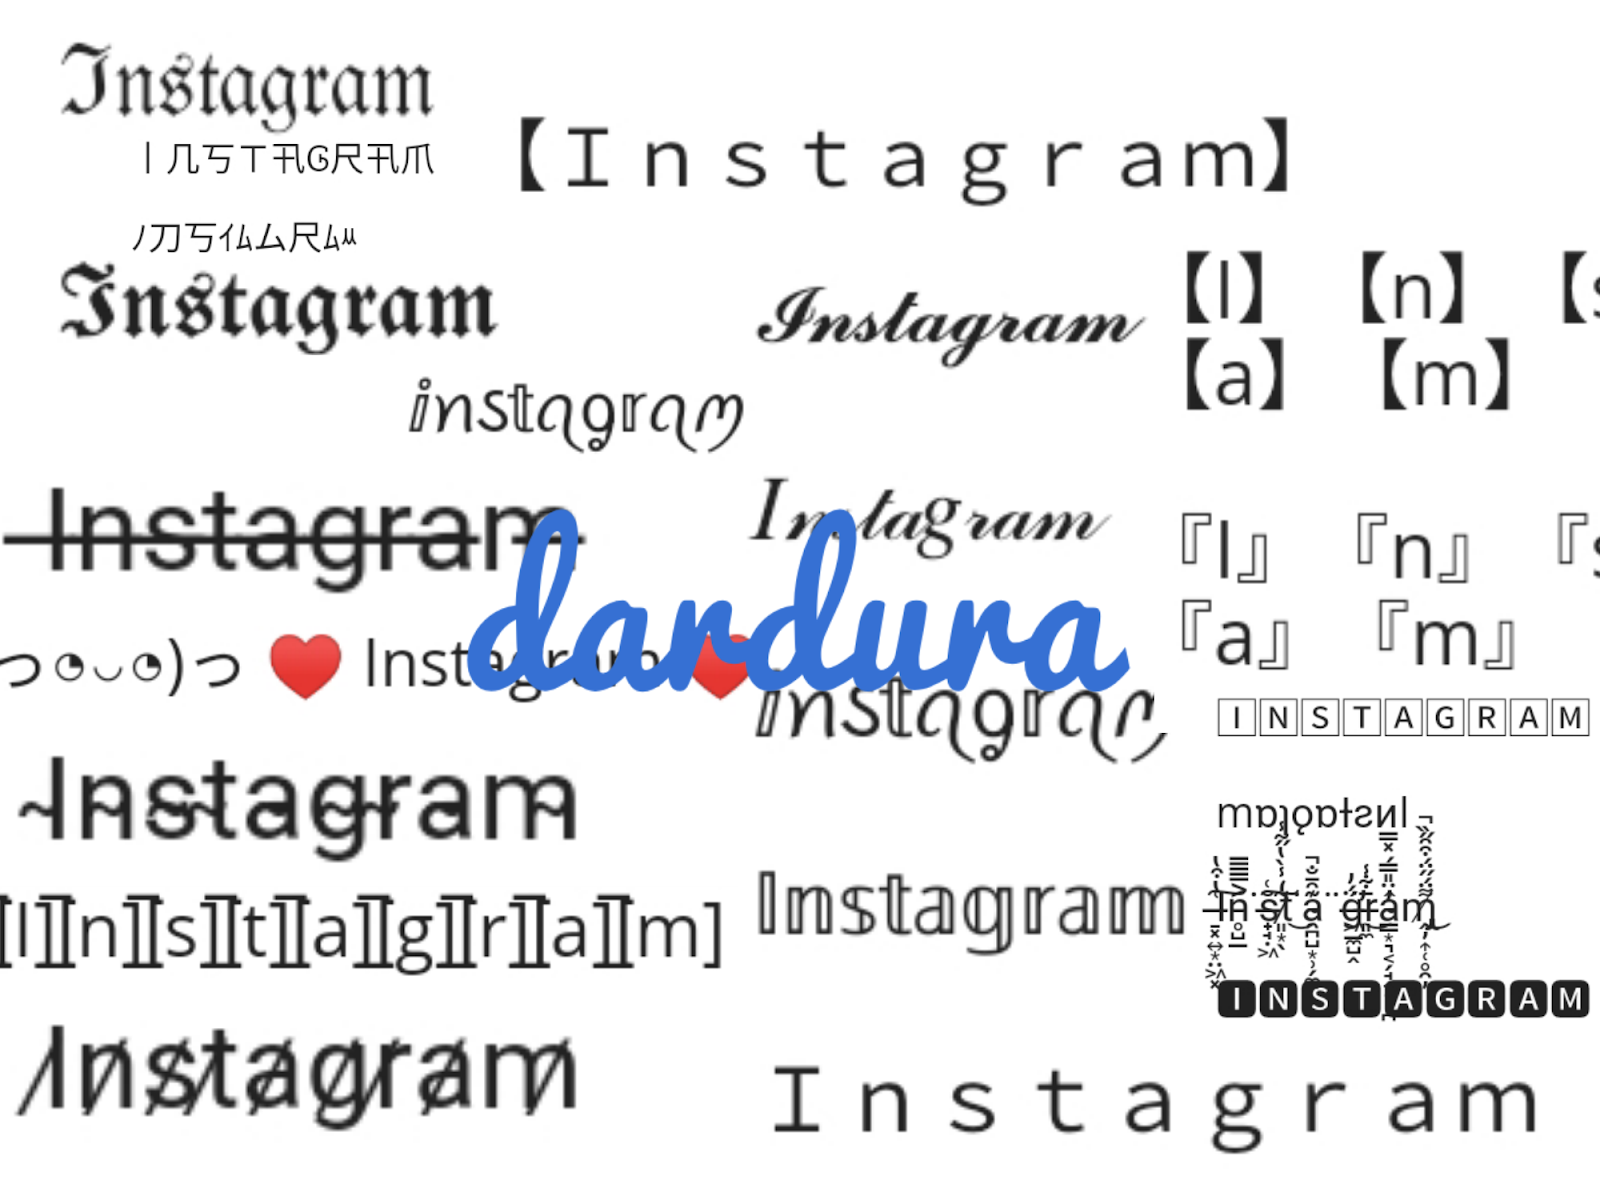 Instagram Font Generator: Sử dụng công cụ tạo chữ trên Instagram để tạo ra các kiểu chữ độc đáo và thu hút sự chú ý trên trang cá nhân của bạn. Công cụ này không chỉ giúp bạn tạo các font chữ độc đáo, mà còn giúp bạn kiểm soát hoàn toàn định dạng văn bản của mình trên trang cá nhân.